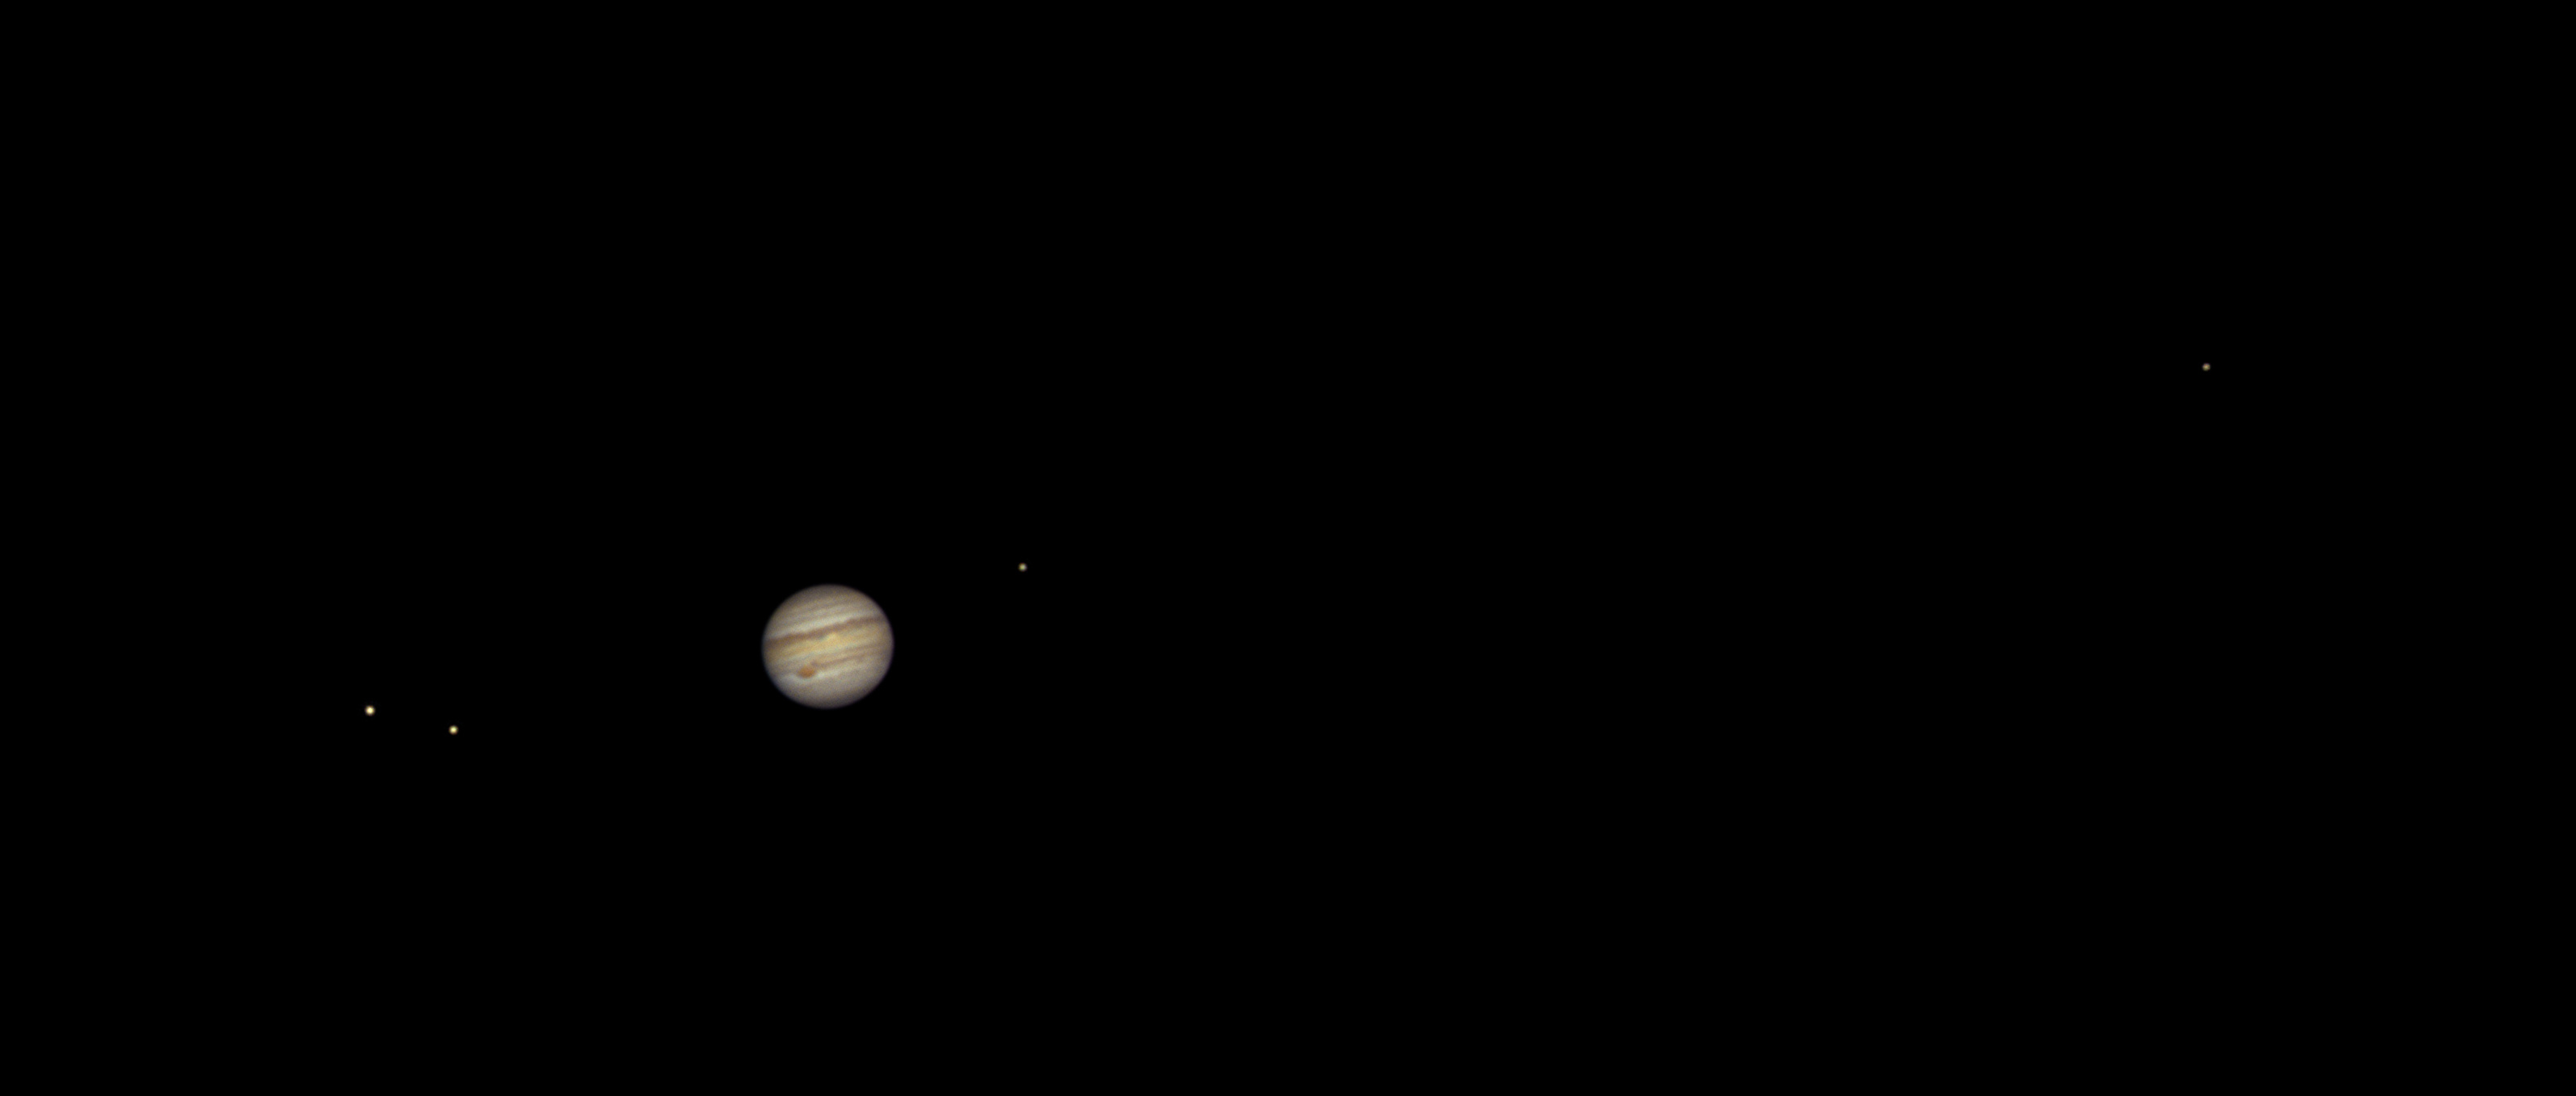 Jupiter et ses quatre plus grandes lunes. La plus éloignée, à droite, est Callisto. Vous pouvez voir les satellites galiléens avec une pare de jumelles. Avec une lunette ou un télescope, sans grossissement important, vous pouvez admirer les bandes équatoriales de la géante gazeuse et aussi sa Grande tache rouge. © David Hajnal, Adobe Stock